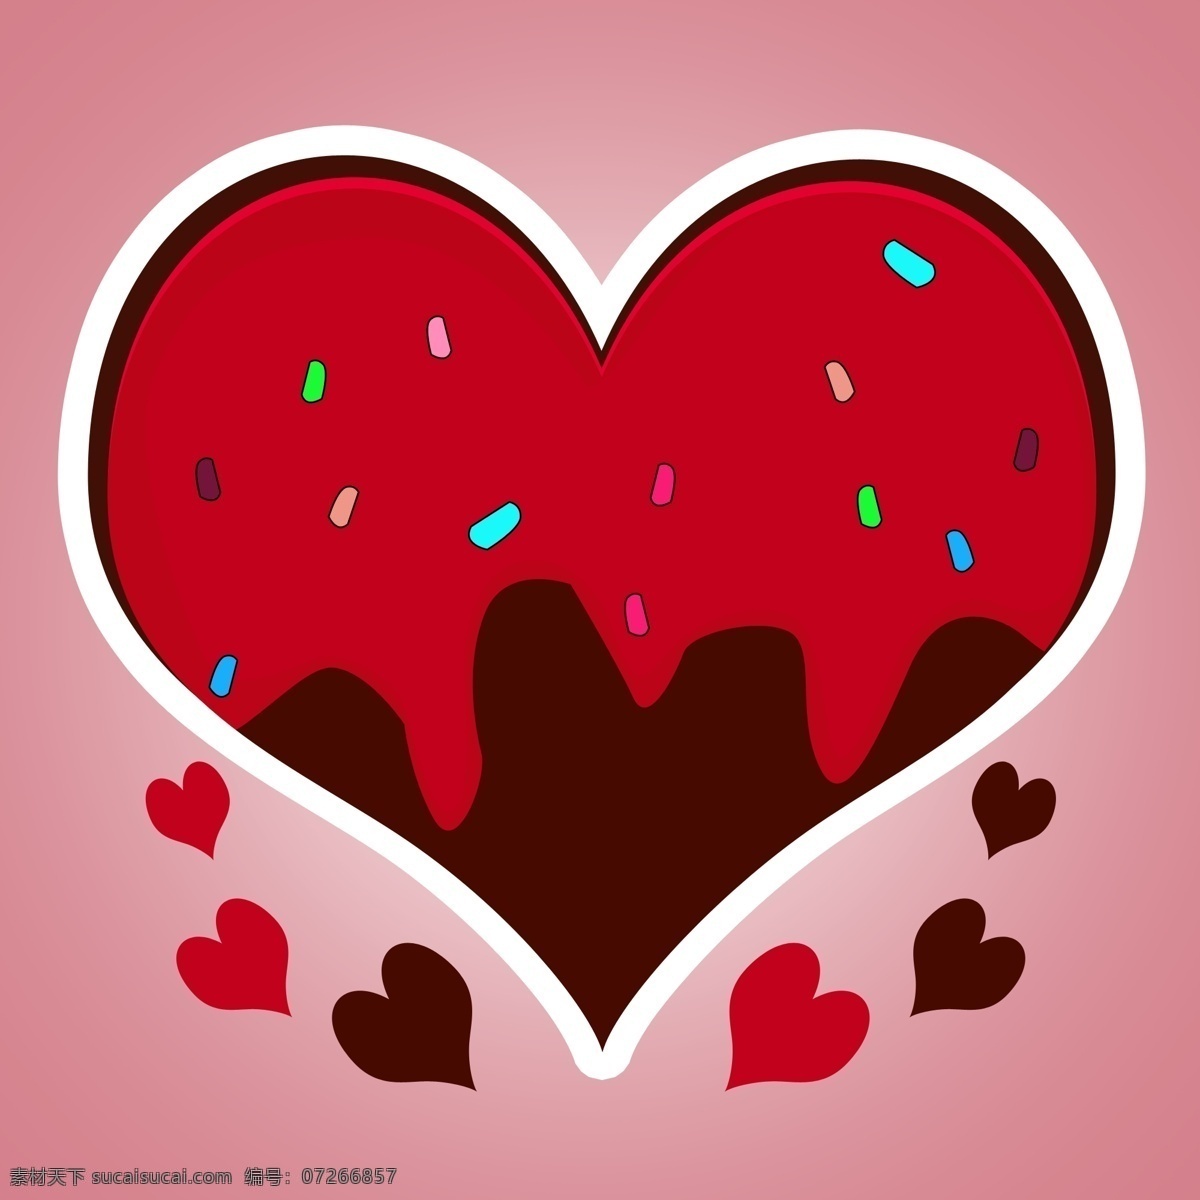 相片 情人节 红色 可爱 巧克力 爱心 心形 创意 相片情人节 表白 巧克力爱心 卡通 红色爱心 爱情